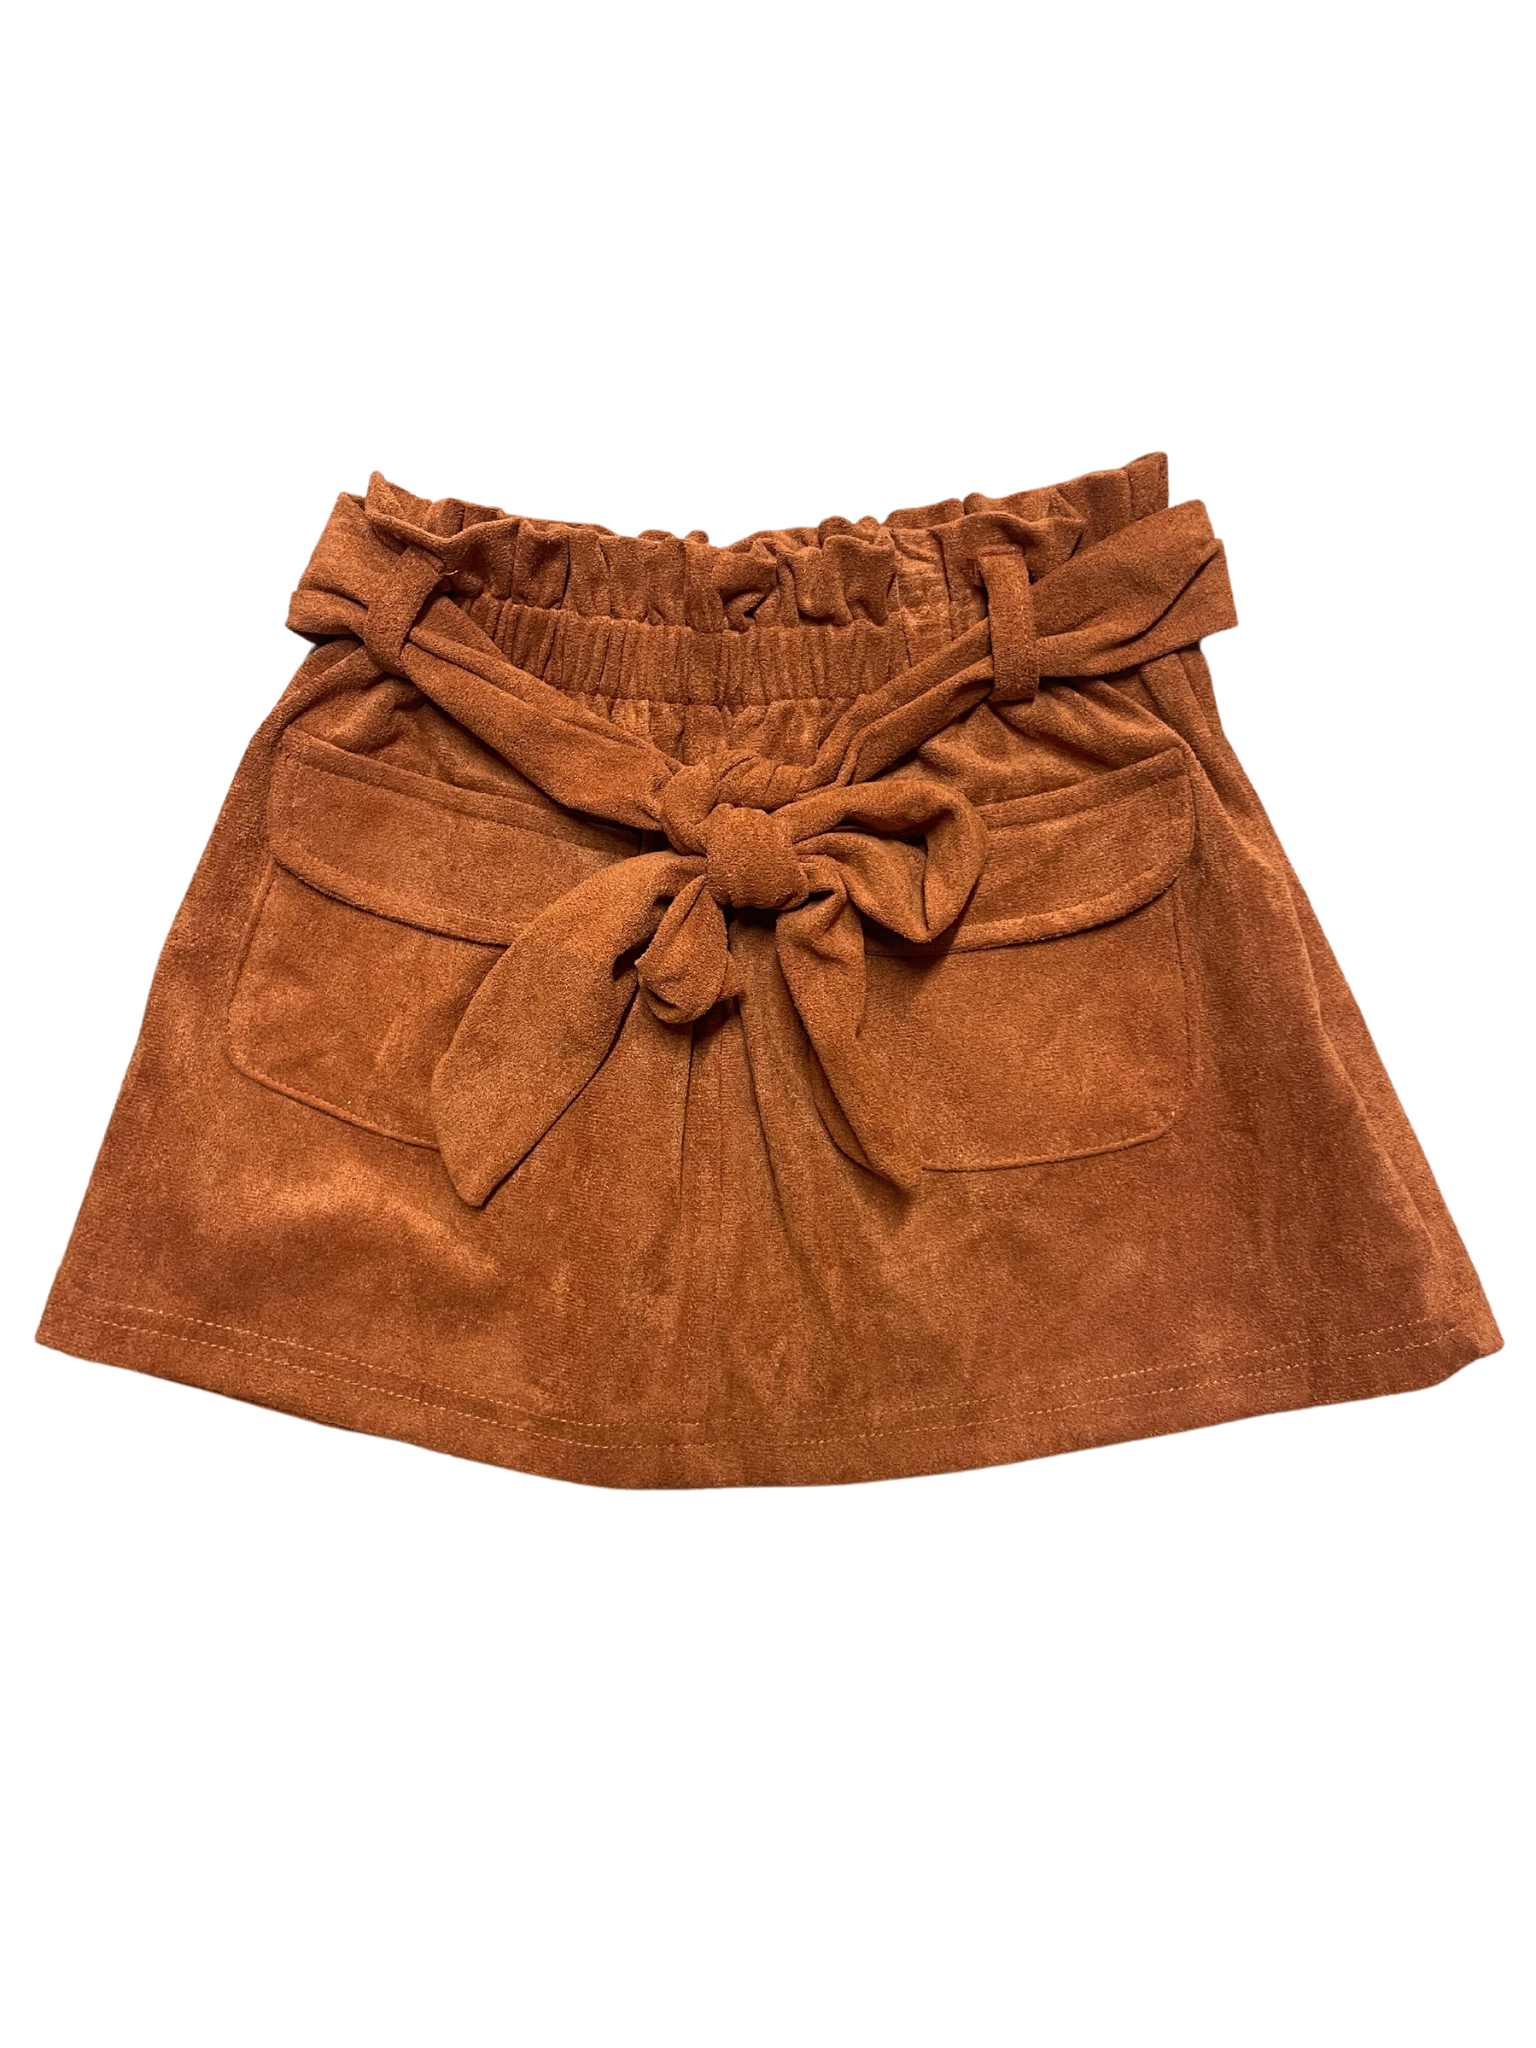 Rust Suede Skirt